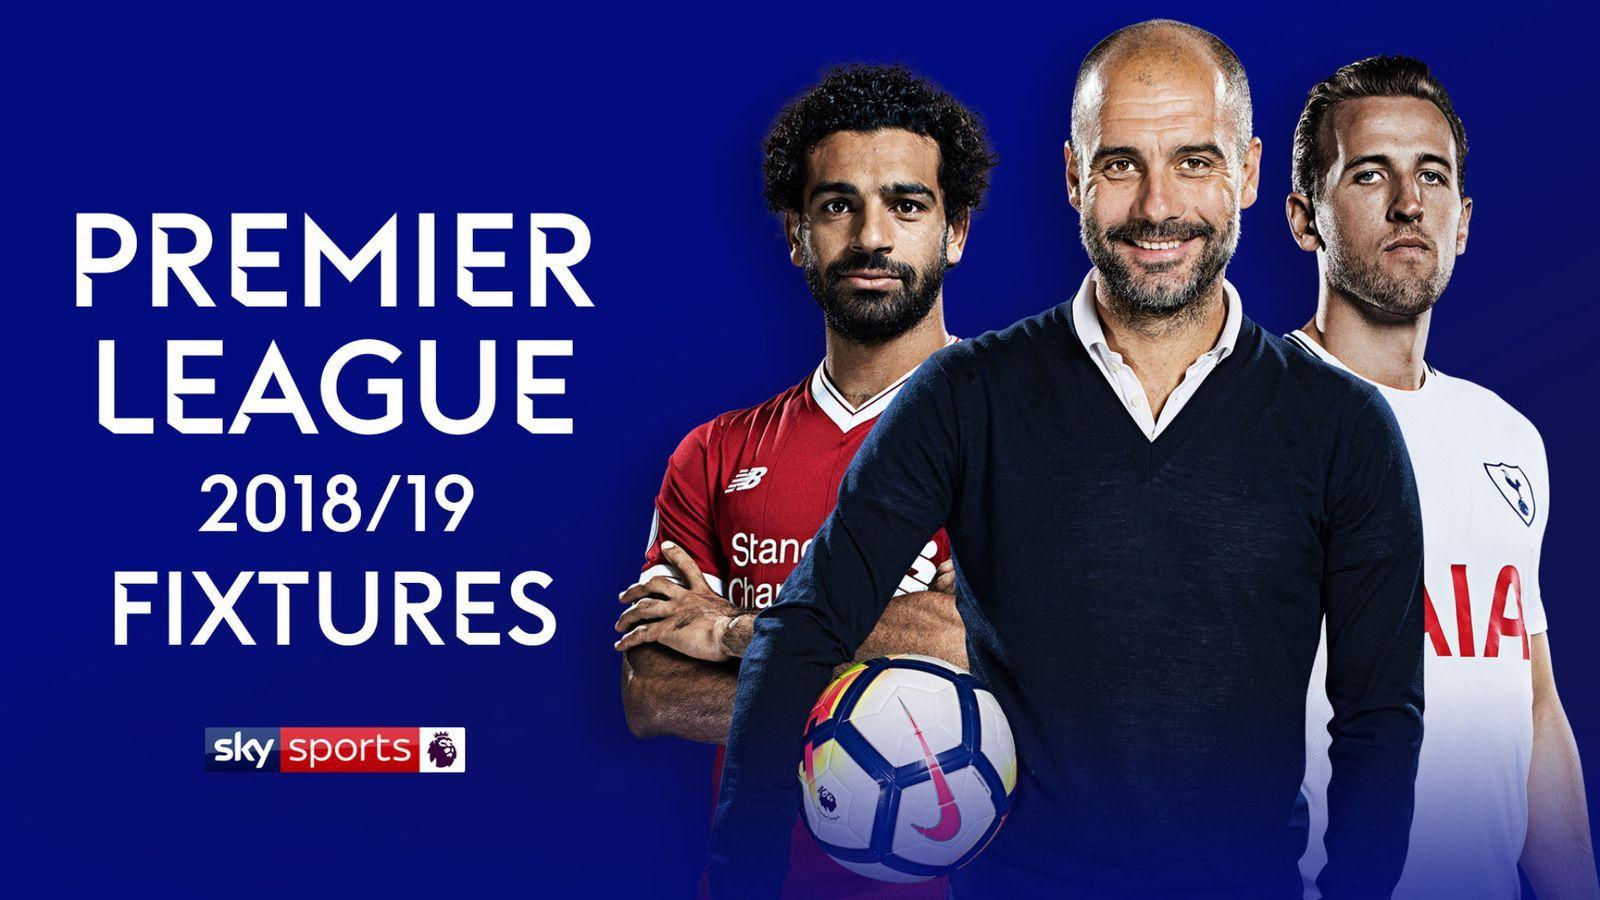 Premier League Fixtures 2018 19: Arsenal Host Manchester City